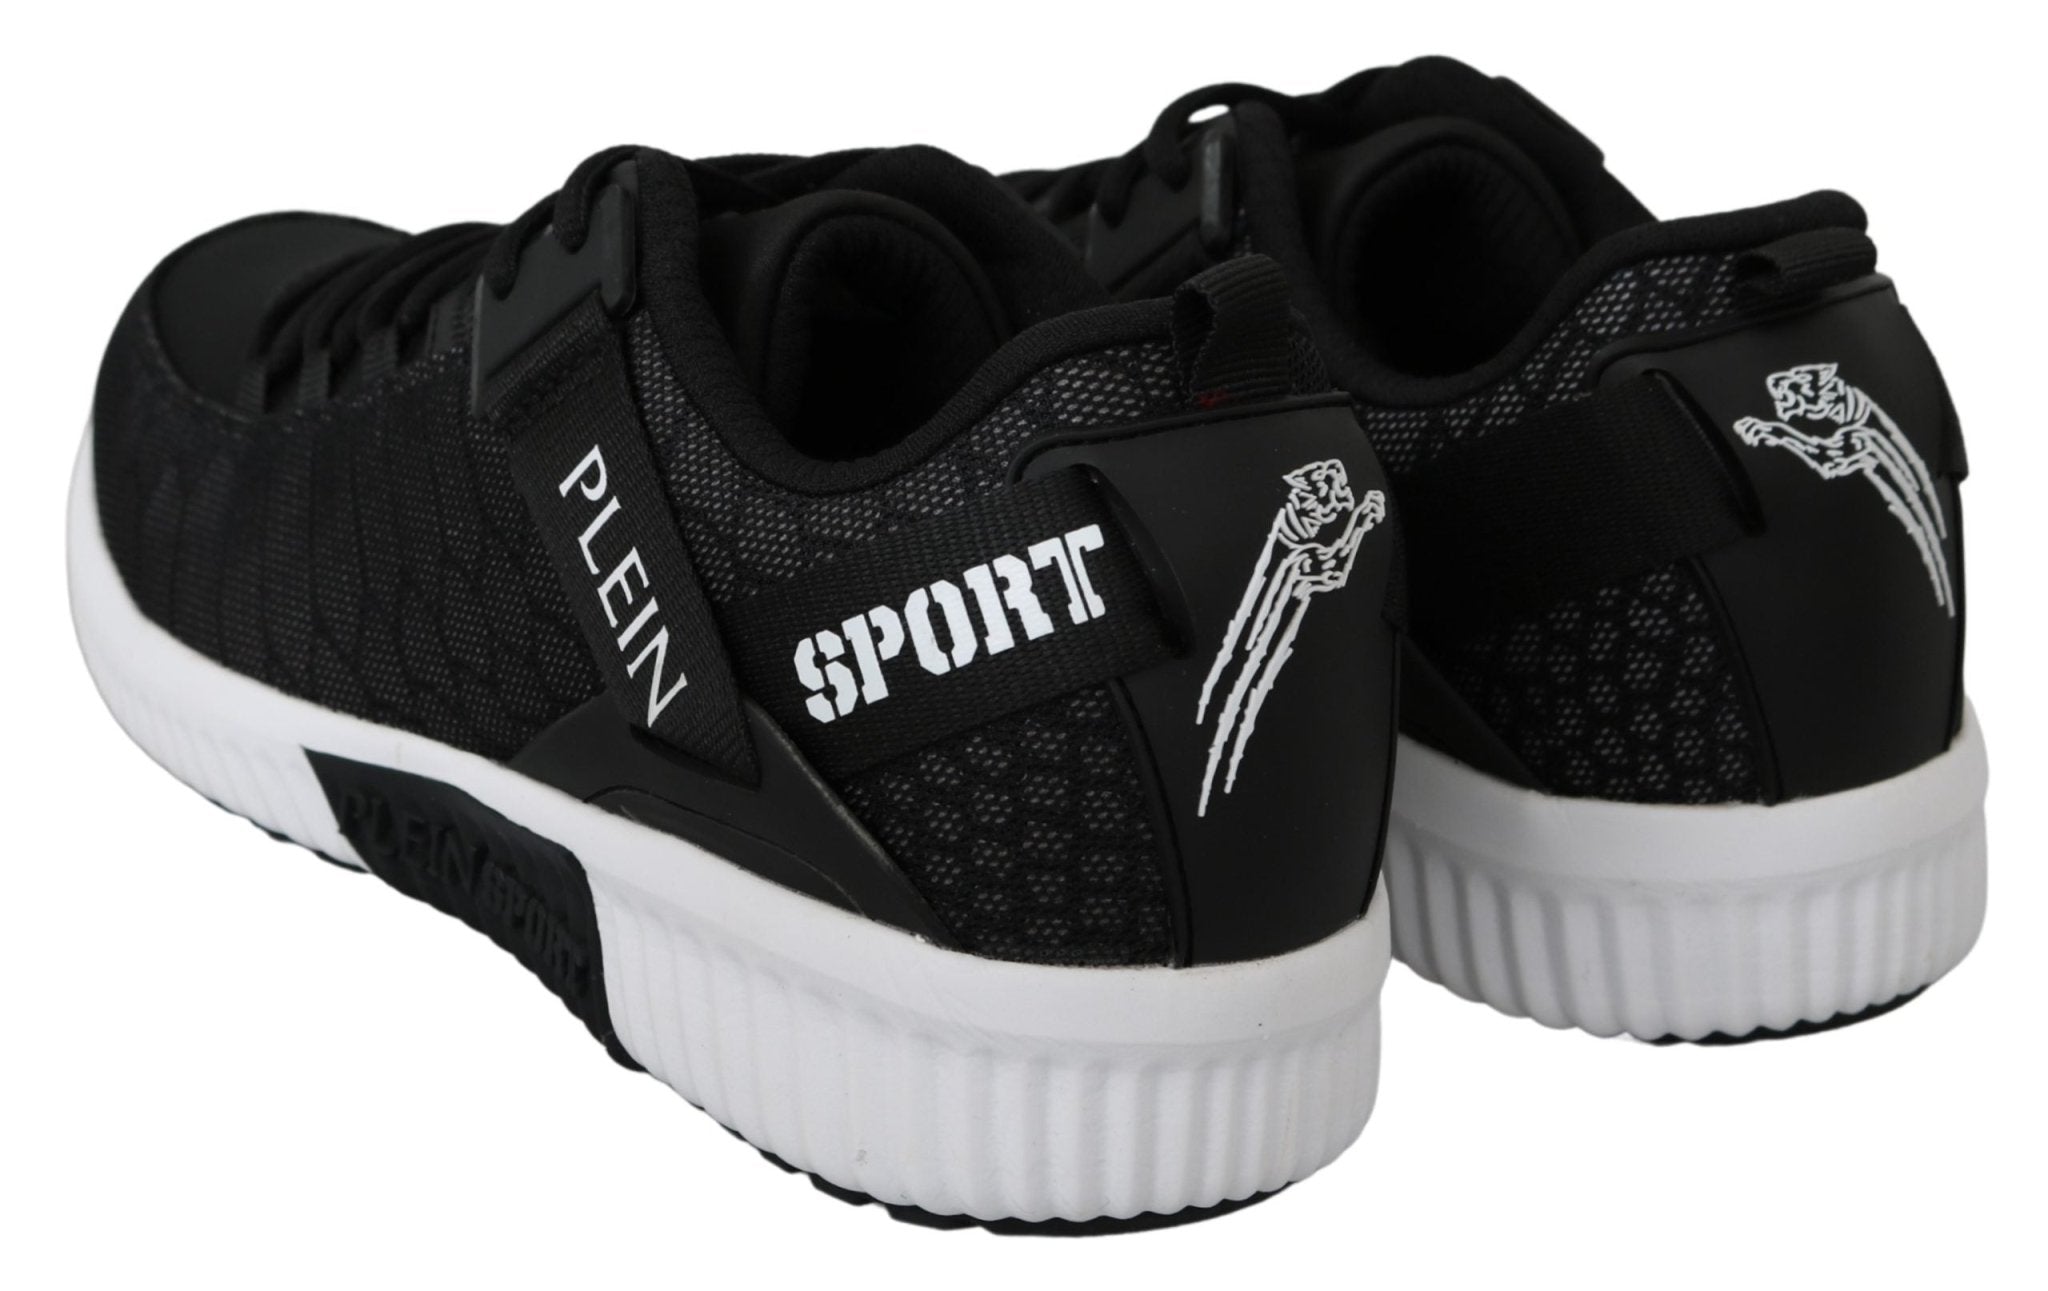 Philipp Plein Black ADRIAN Logo SoftHi-Top Sneakers Shoes - Fizigo